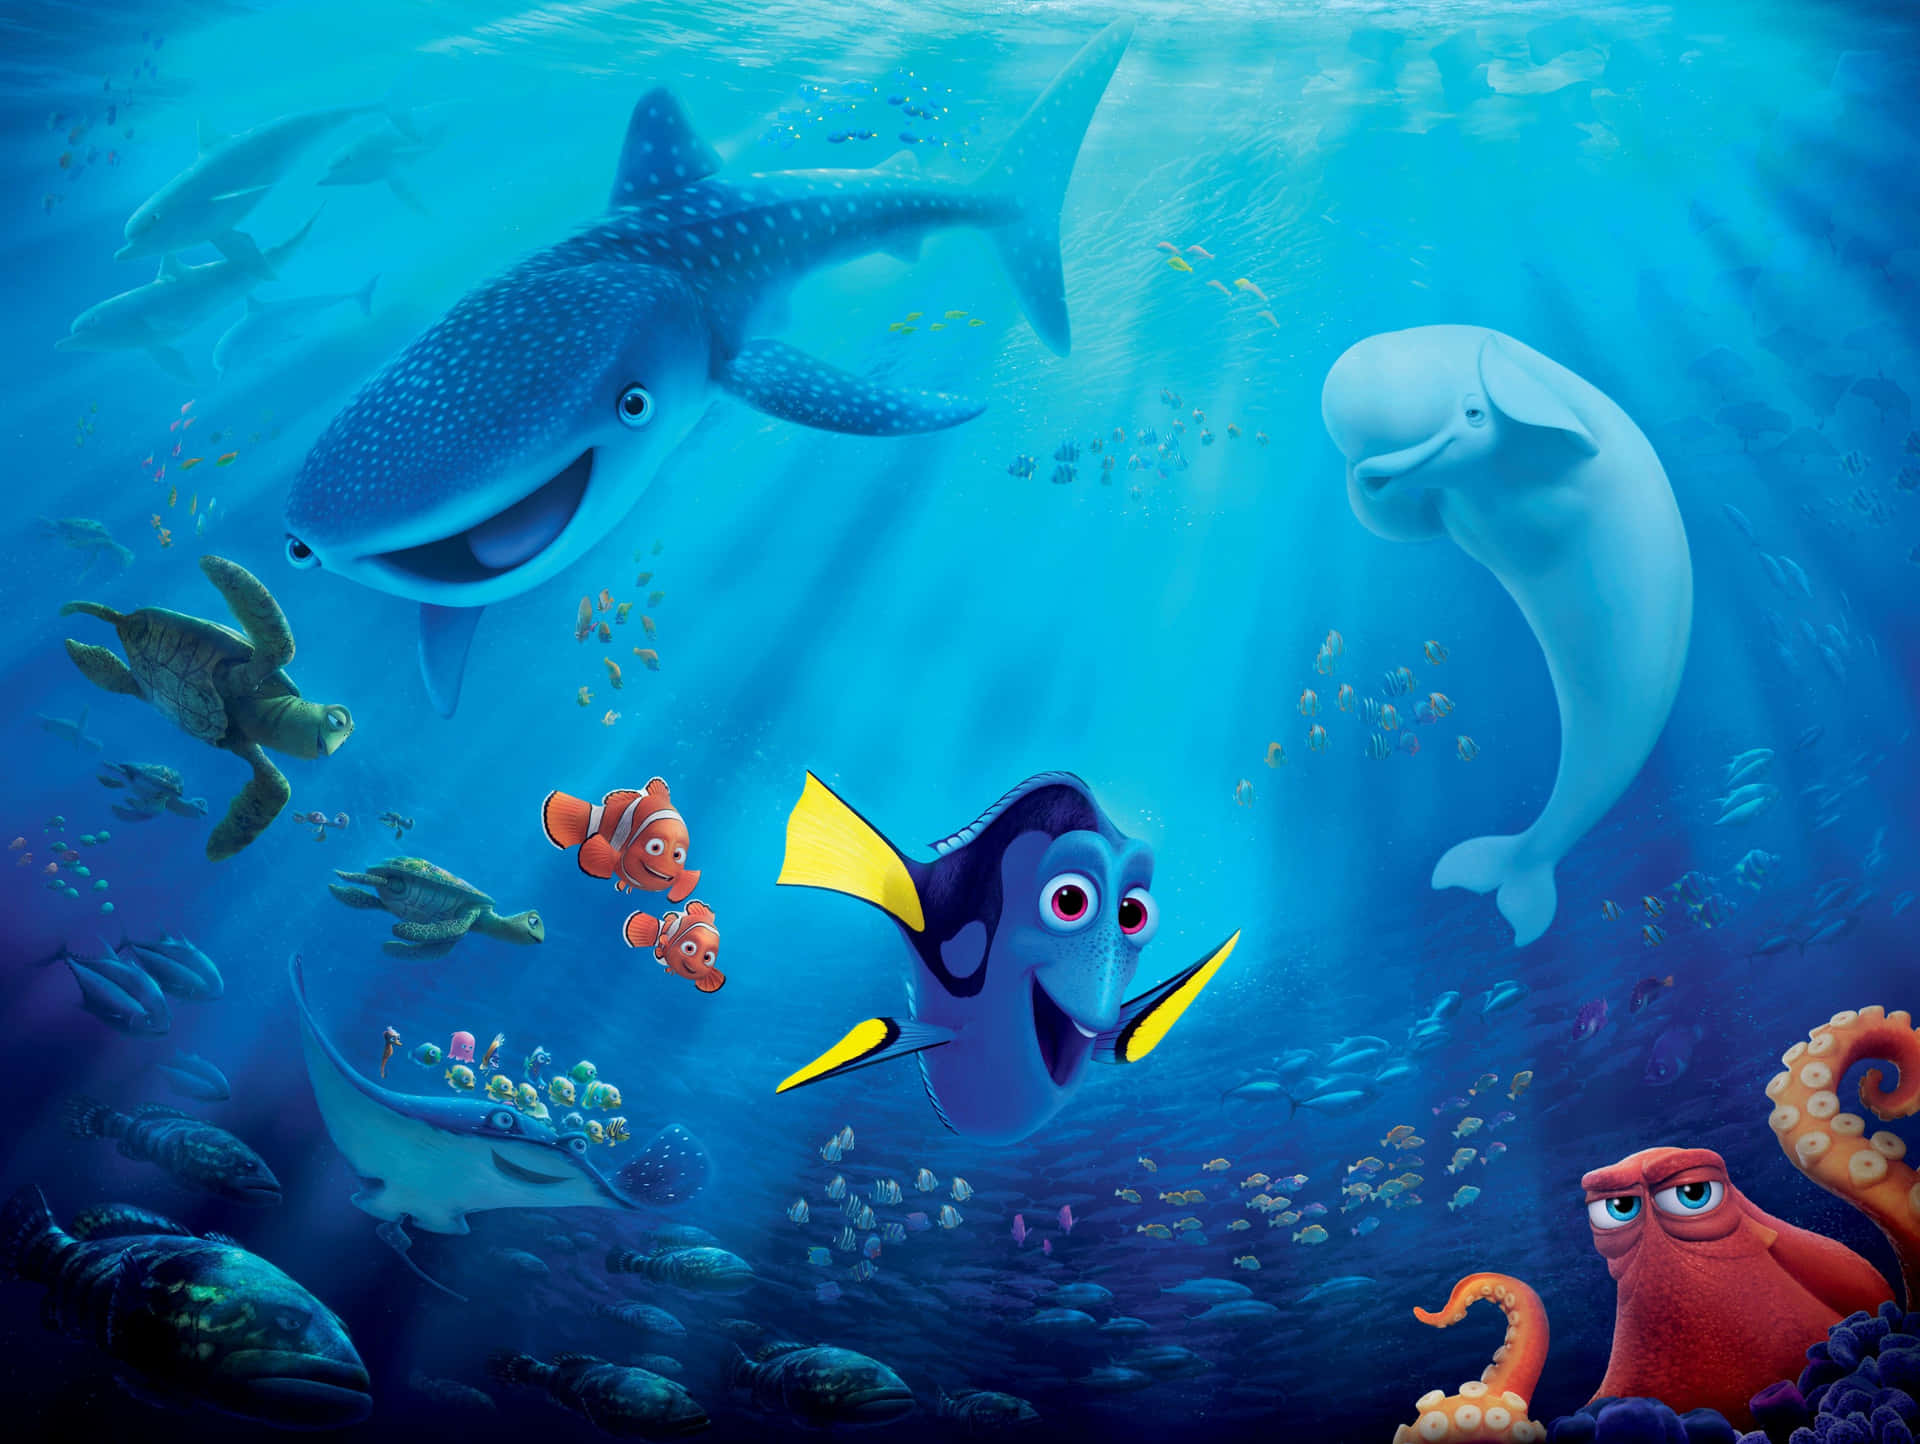 A breathtaking underwater adventure - Finding Nemo